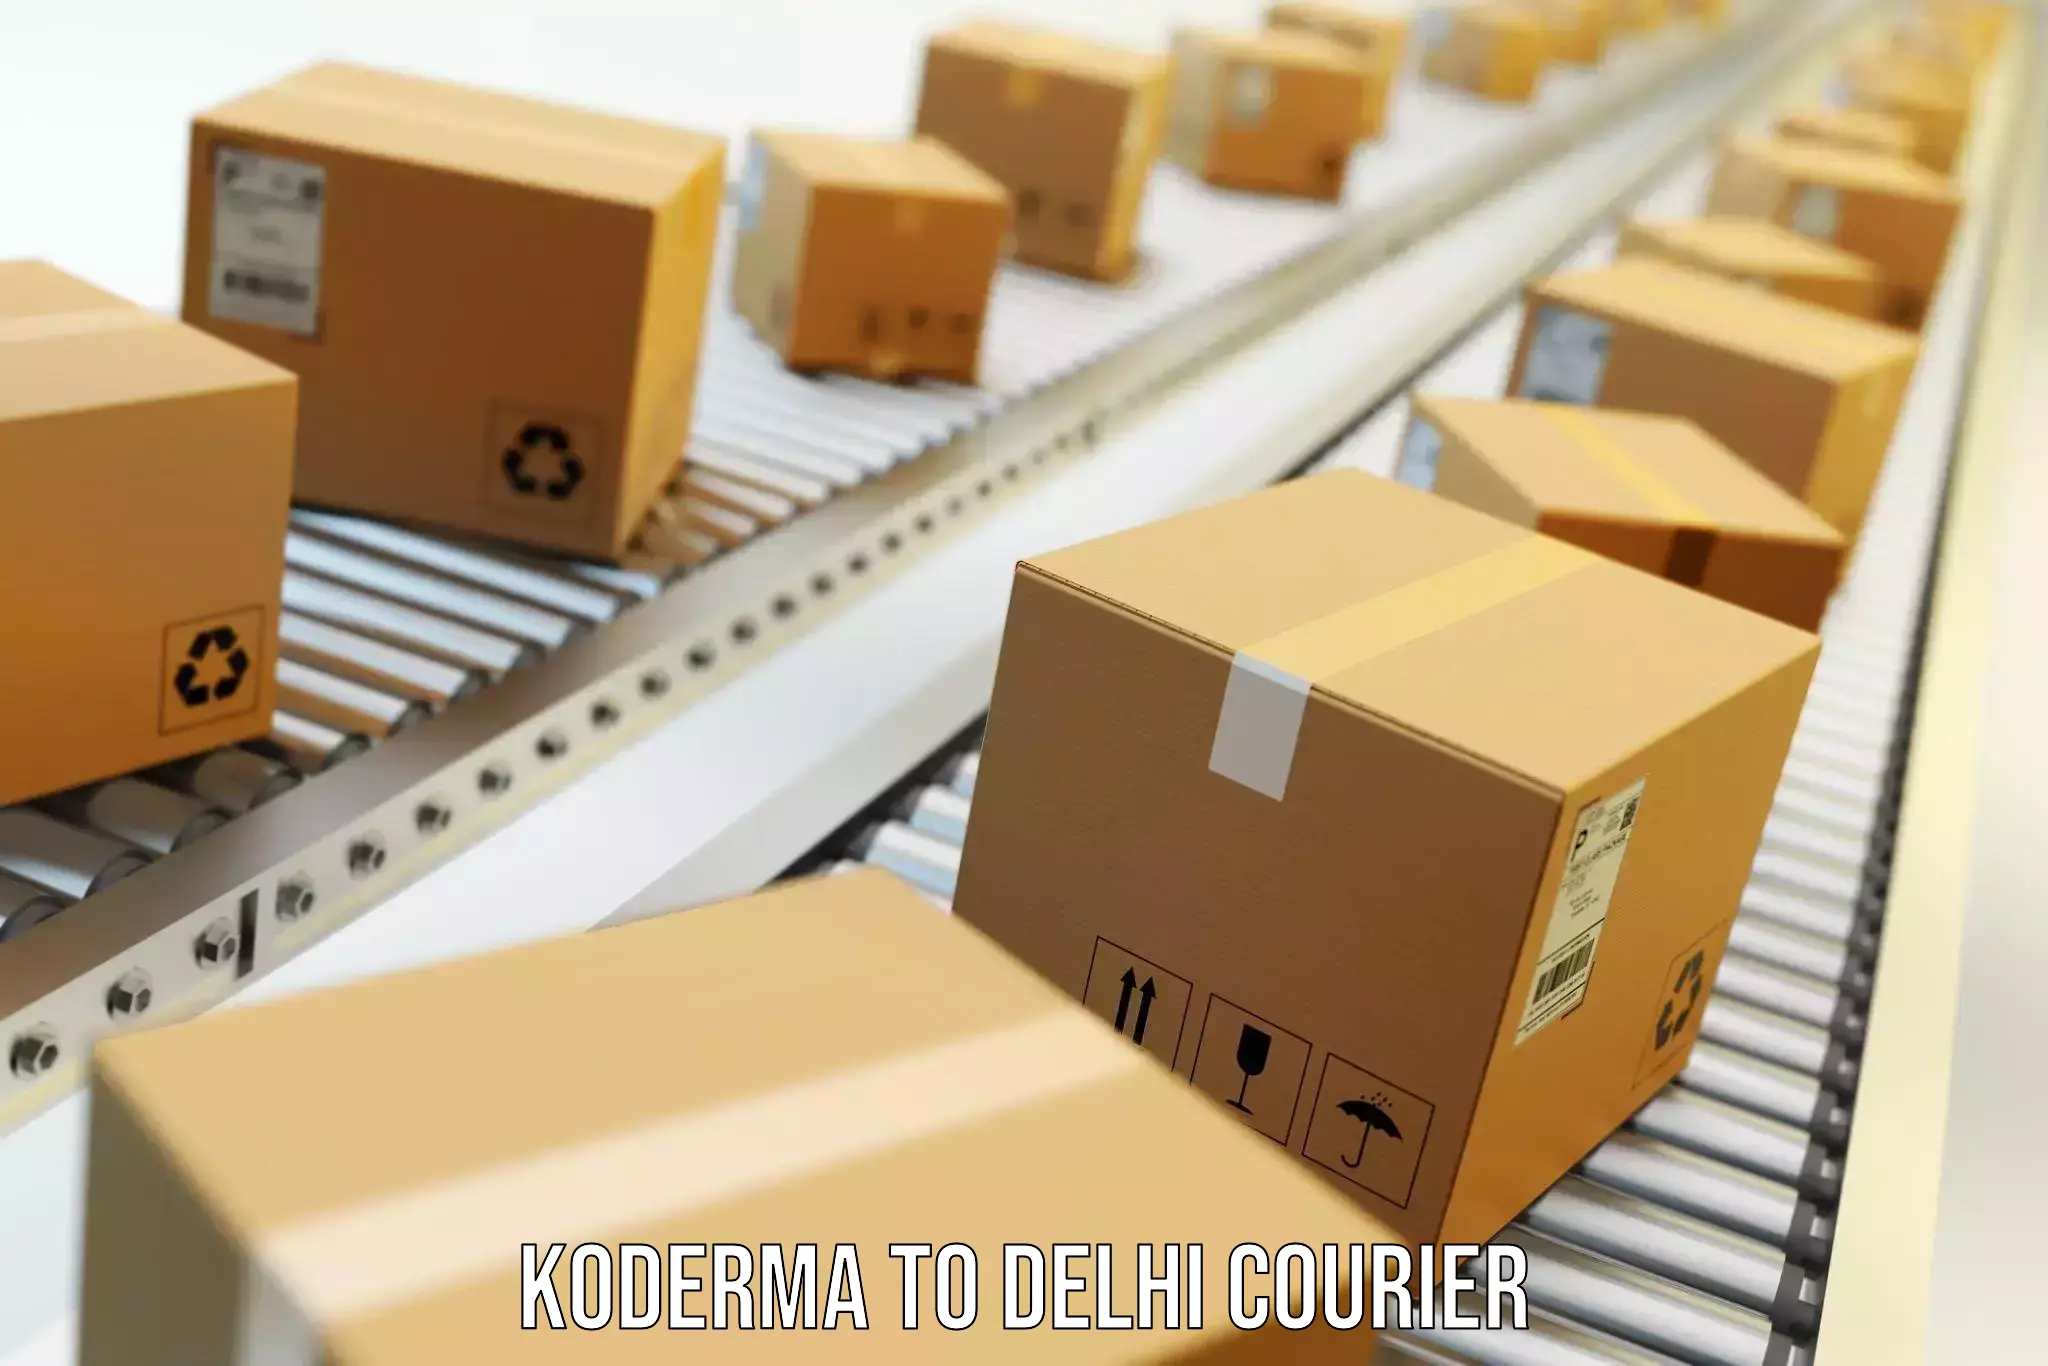 Moving and handling services Koderma to Subhash Nagar